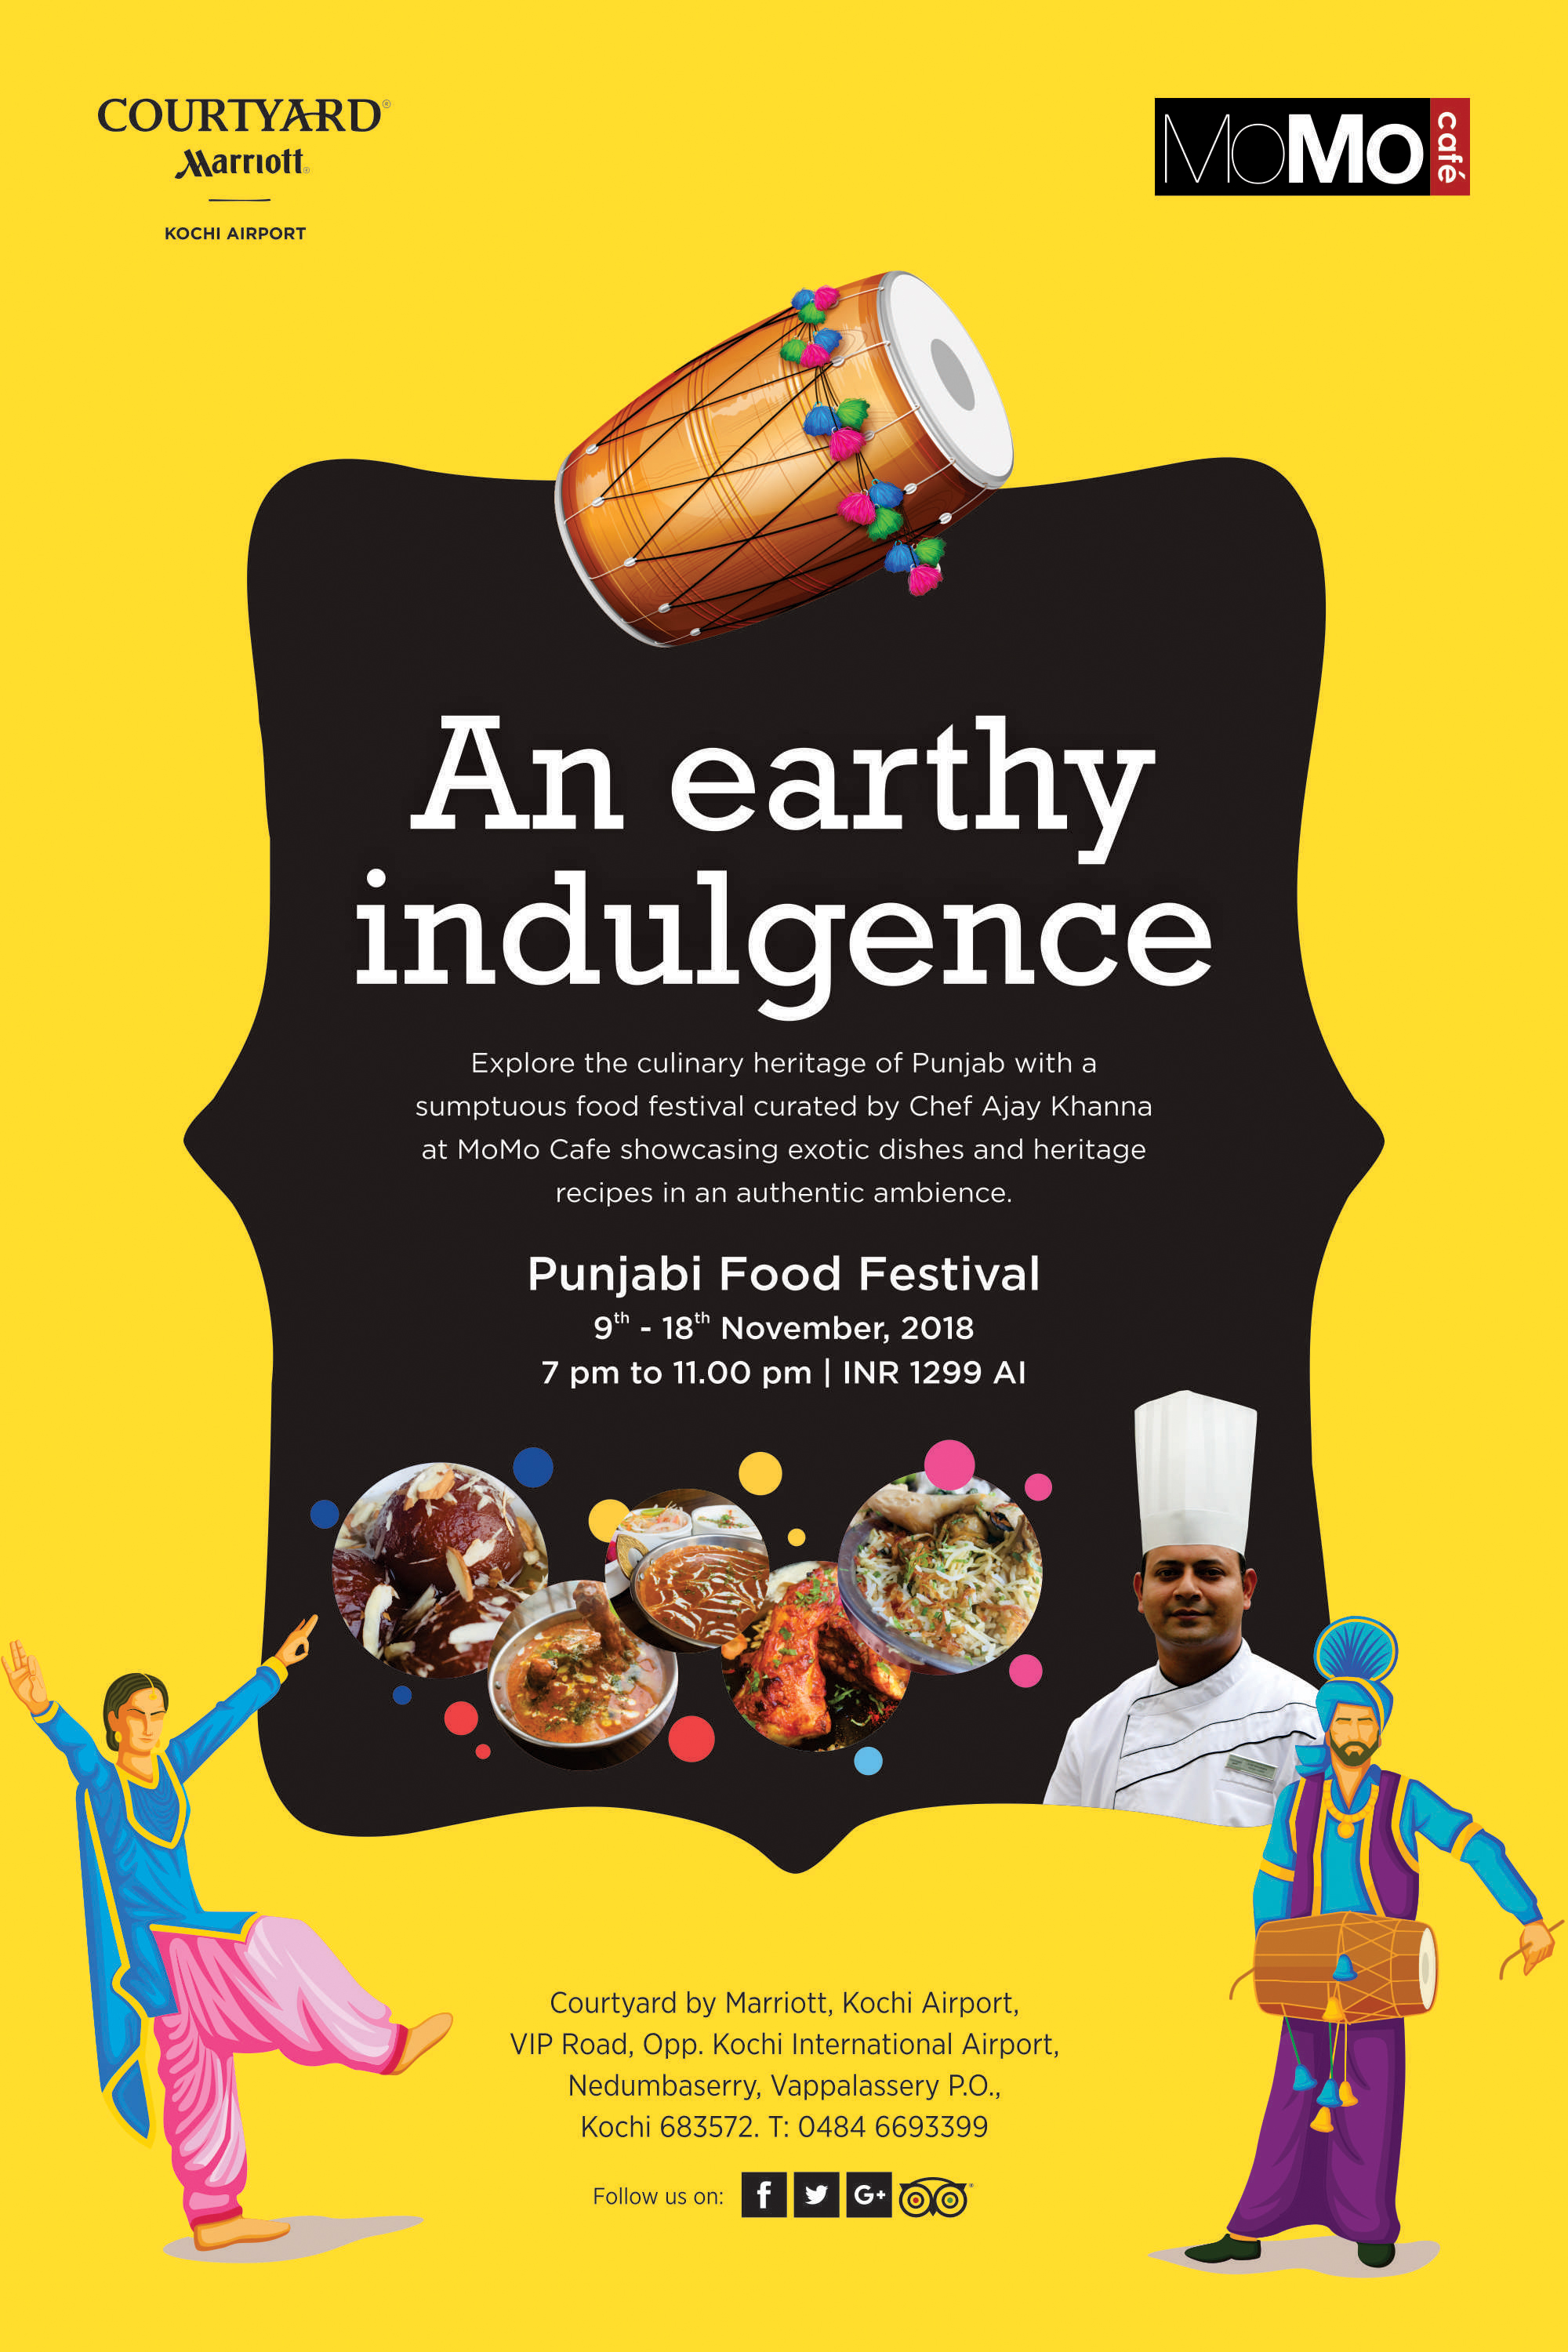 Explore the diversity of Punjabi Cuisine